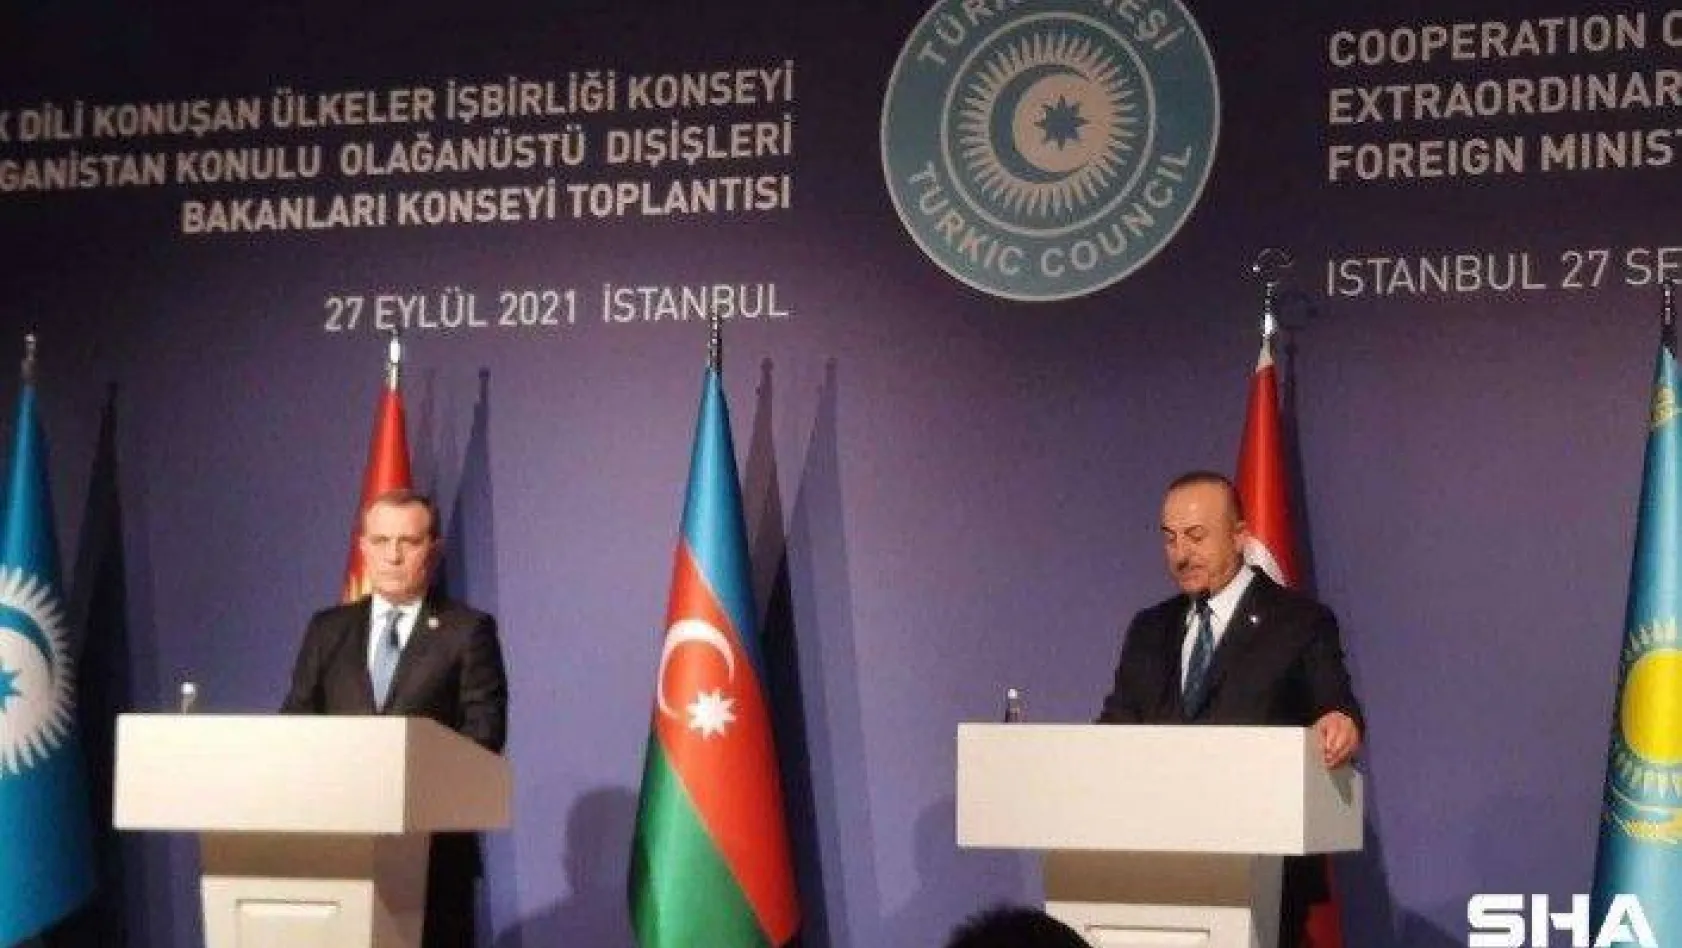 Bakan Çavuşoğlu: &quotAtılacak adımları Azerbaycan ile birlikte koordine ederiz"